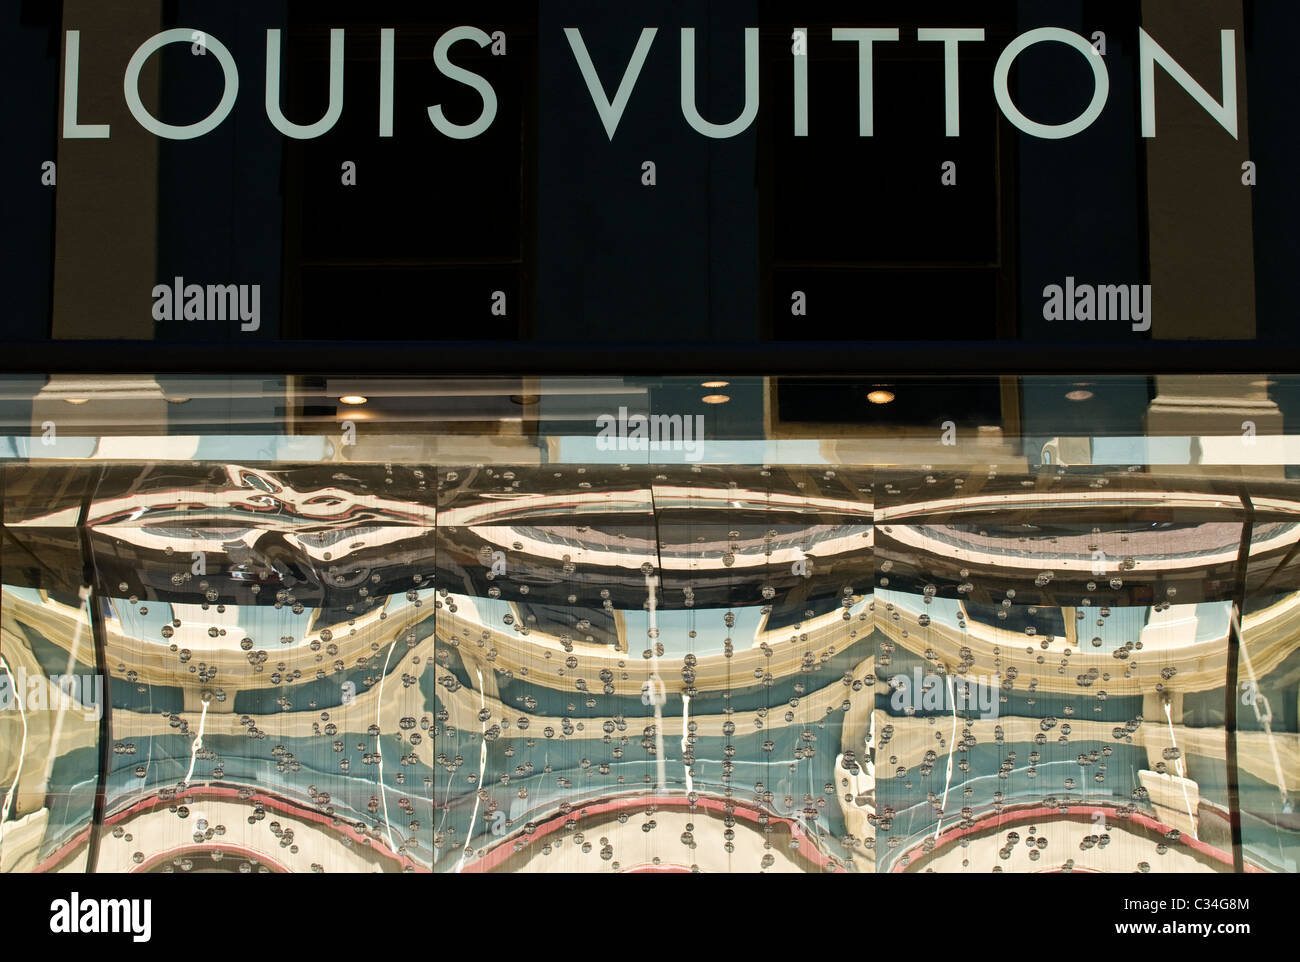 Louis Vuitton shopfront display, King St, Perth, Western Australia Stock  Photo - Alamy